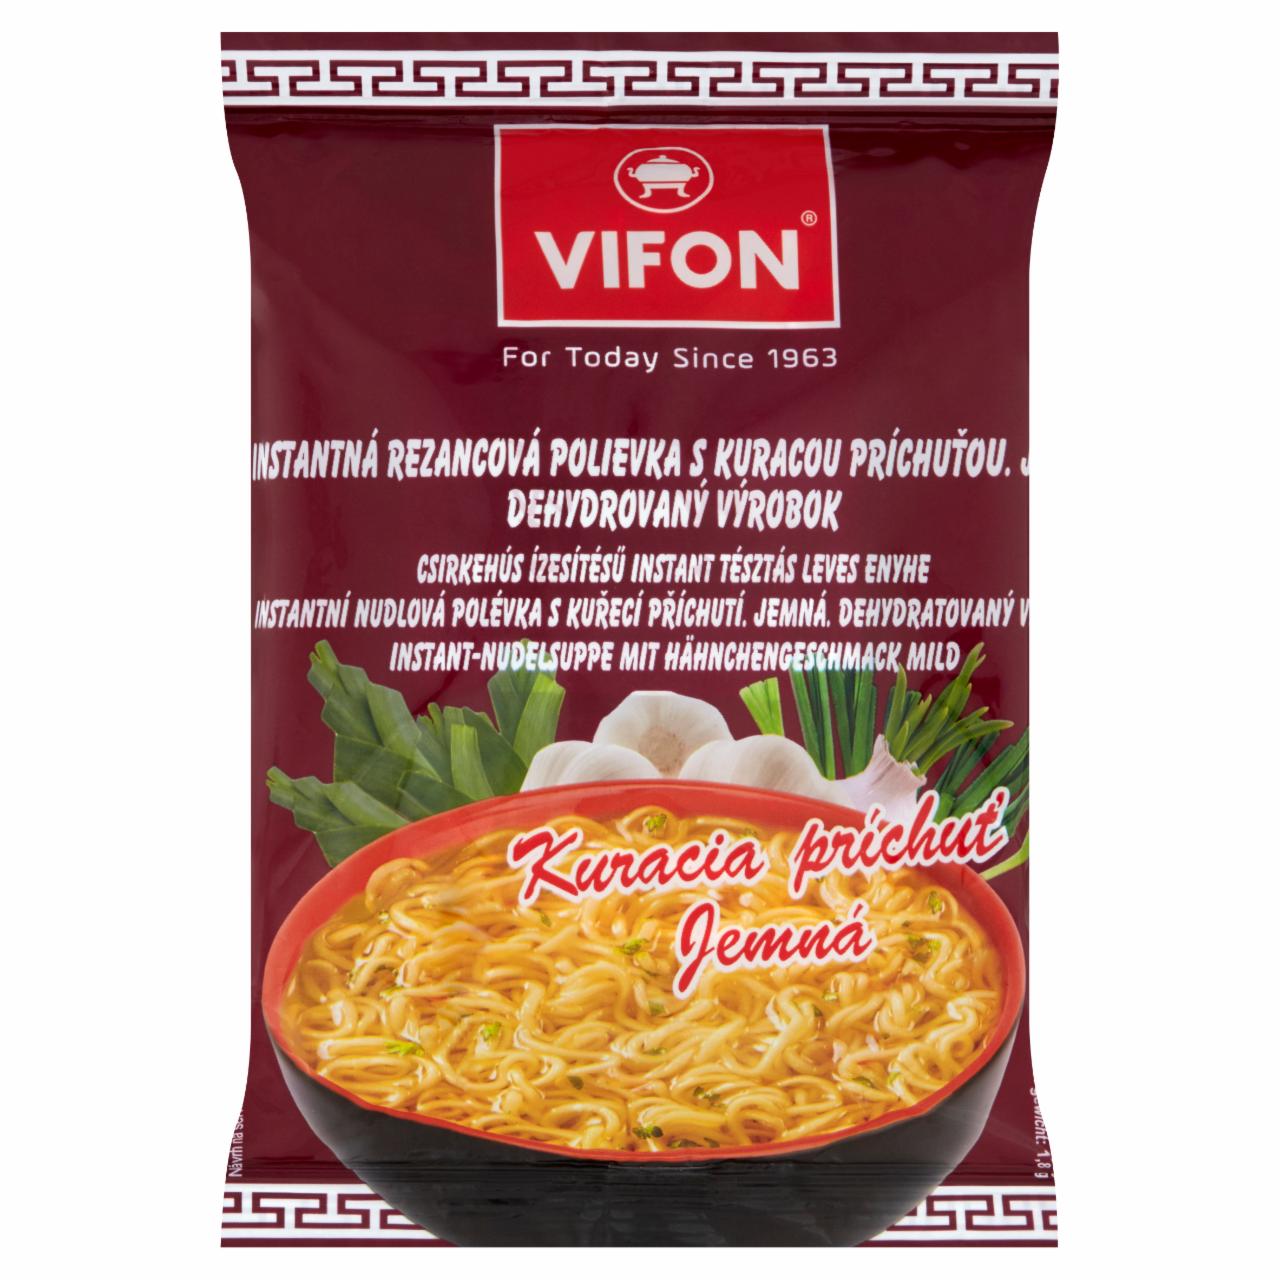 Képek - Csirkehús ízesítésű instant tésztás leves Vifon